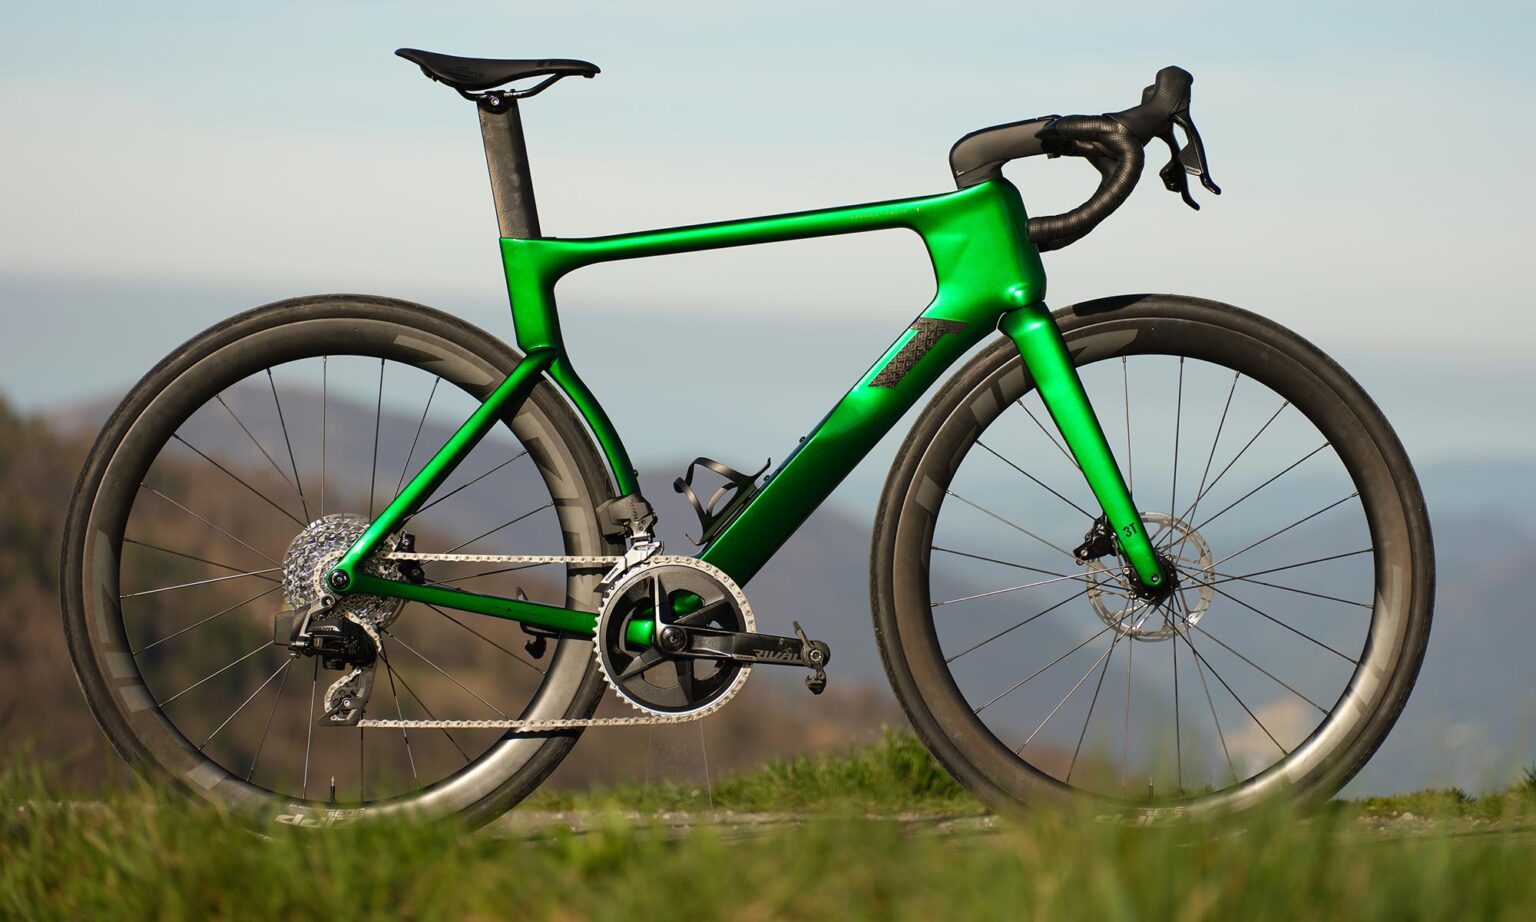 2024 3T Strada Italia wide tire aero carbon road bike made-in-Italy, Verde Rival AXS